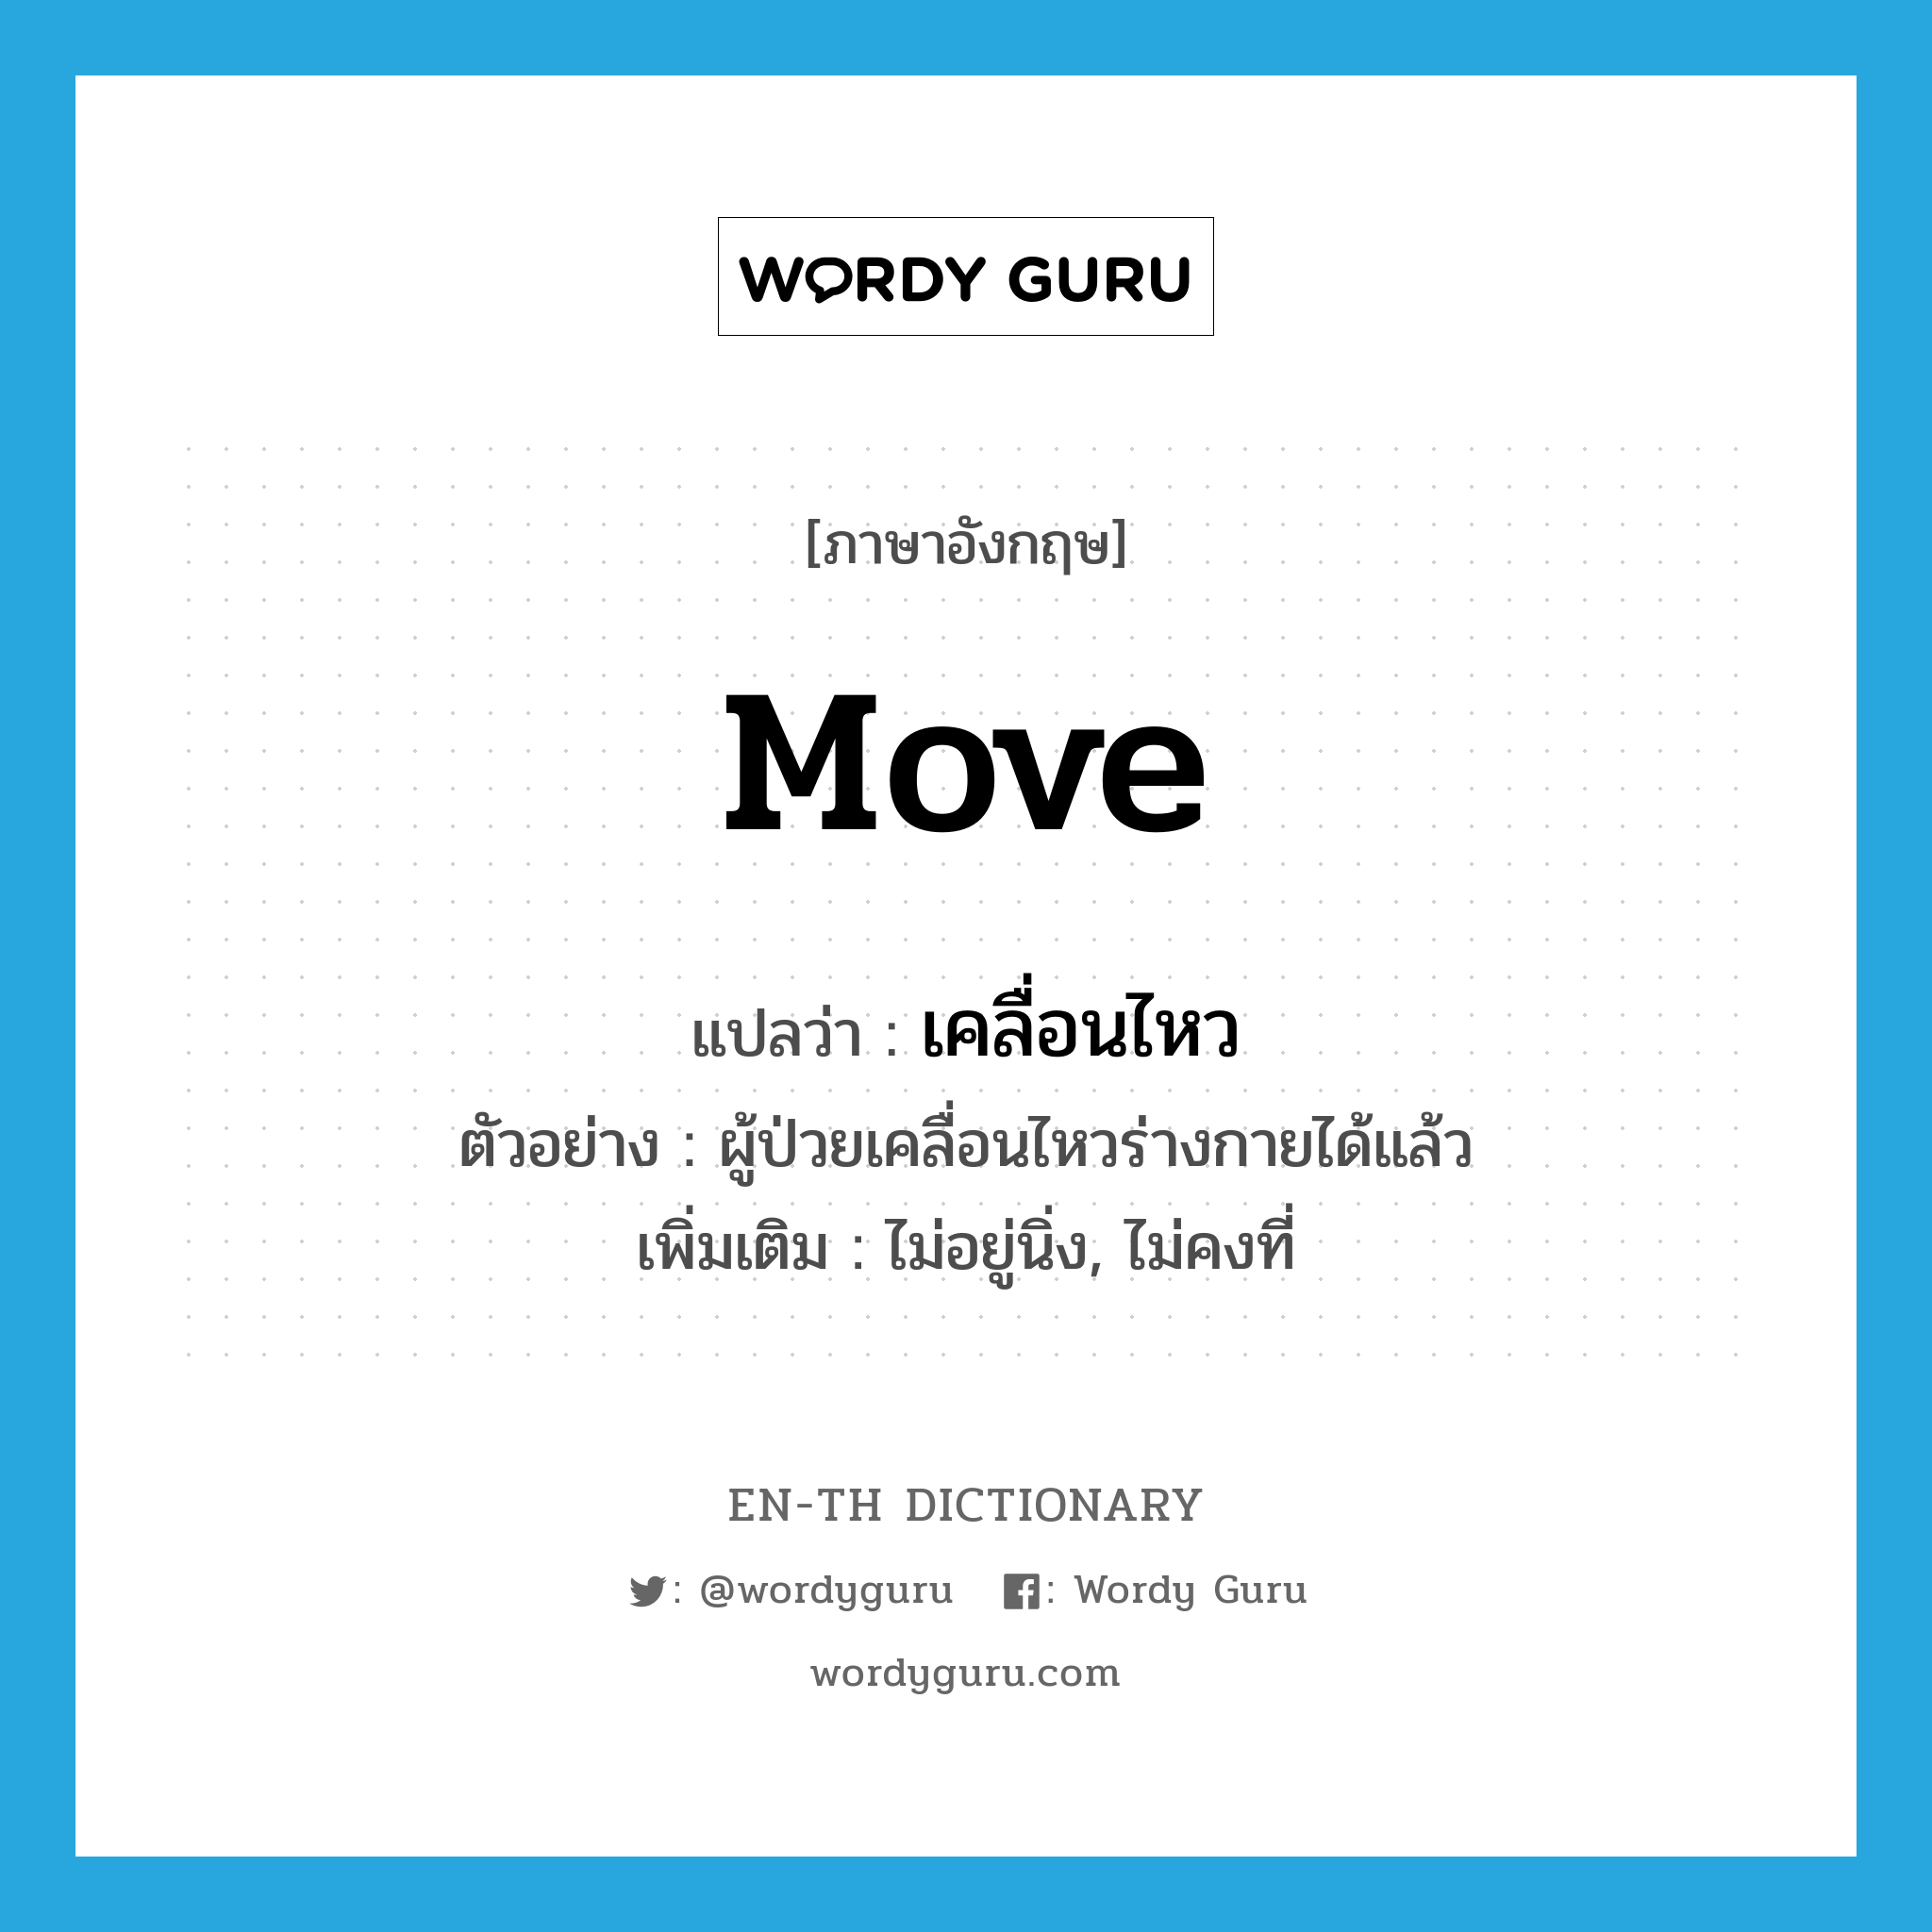 เคลื่อนไหว ภาษาอังกฤษ?, คำศัพท์ภาษาอังกฤษ เคลื่อนไหว แปลว่า move ประเภท V ตัวอย่าง ผู้ป่วยเคลื่อนไหวร่างกายได้แล้ว เพิ่มเติม ไม่อยู่นิ่ง, ไม่คงที่ หมวด V